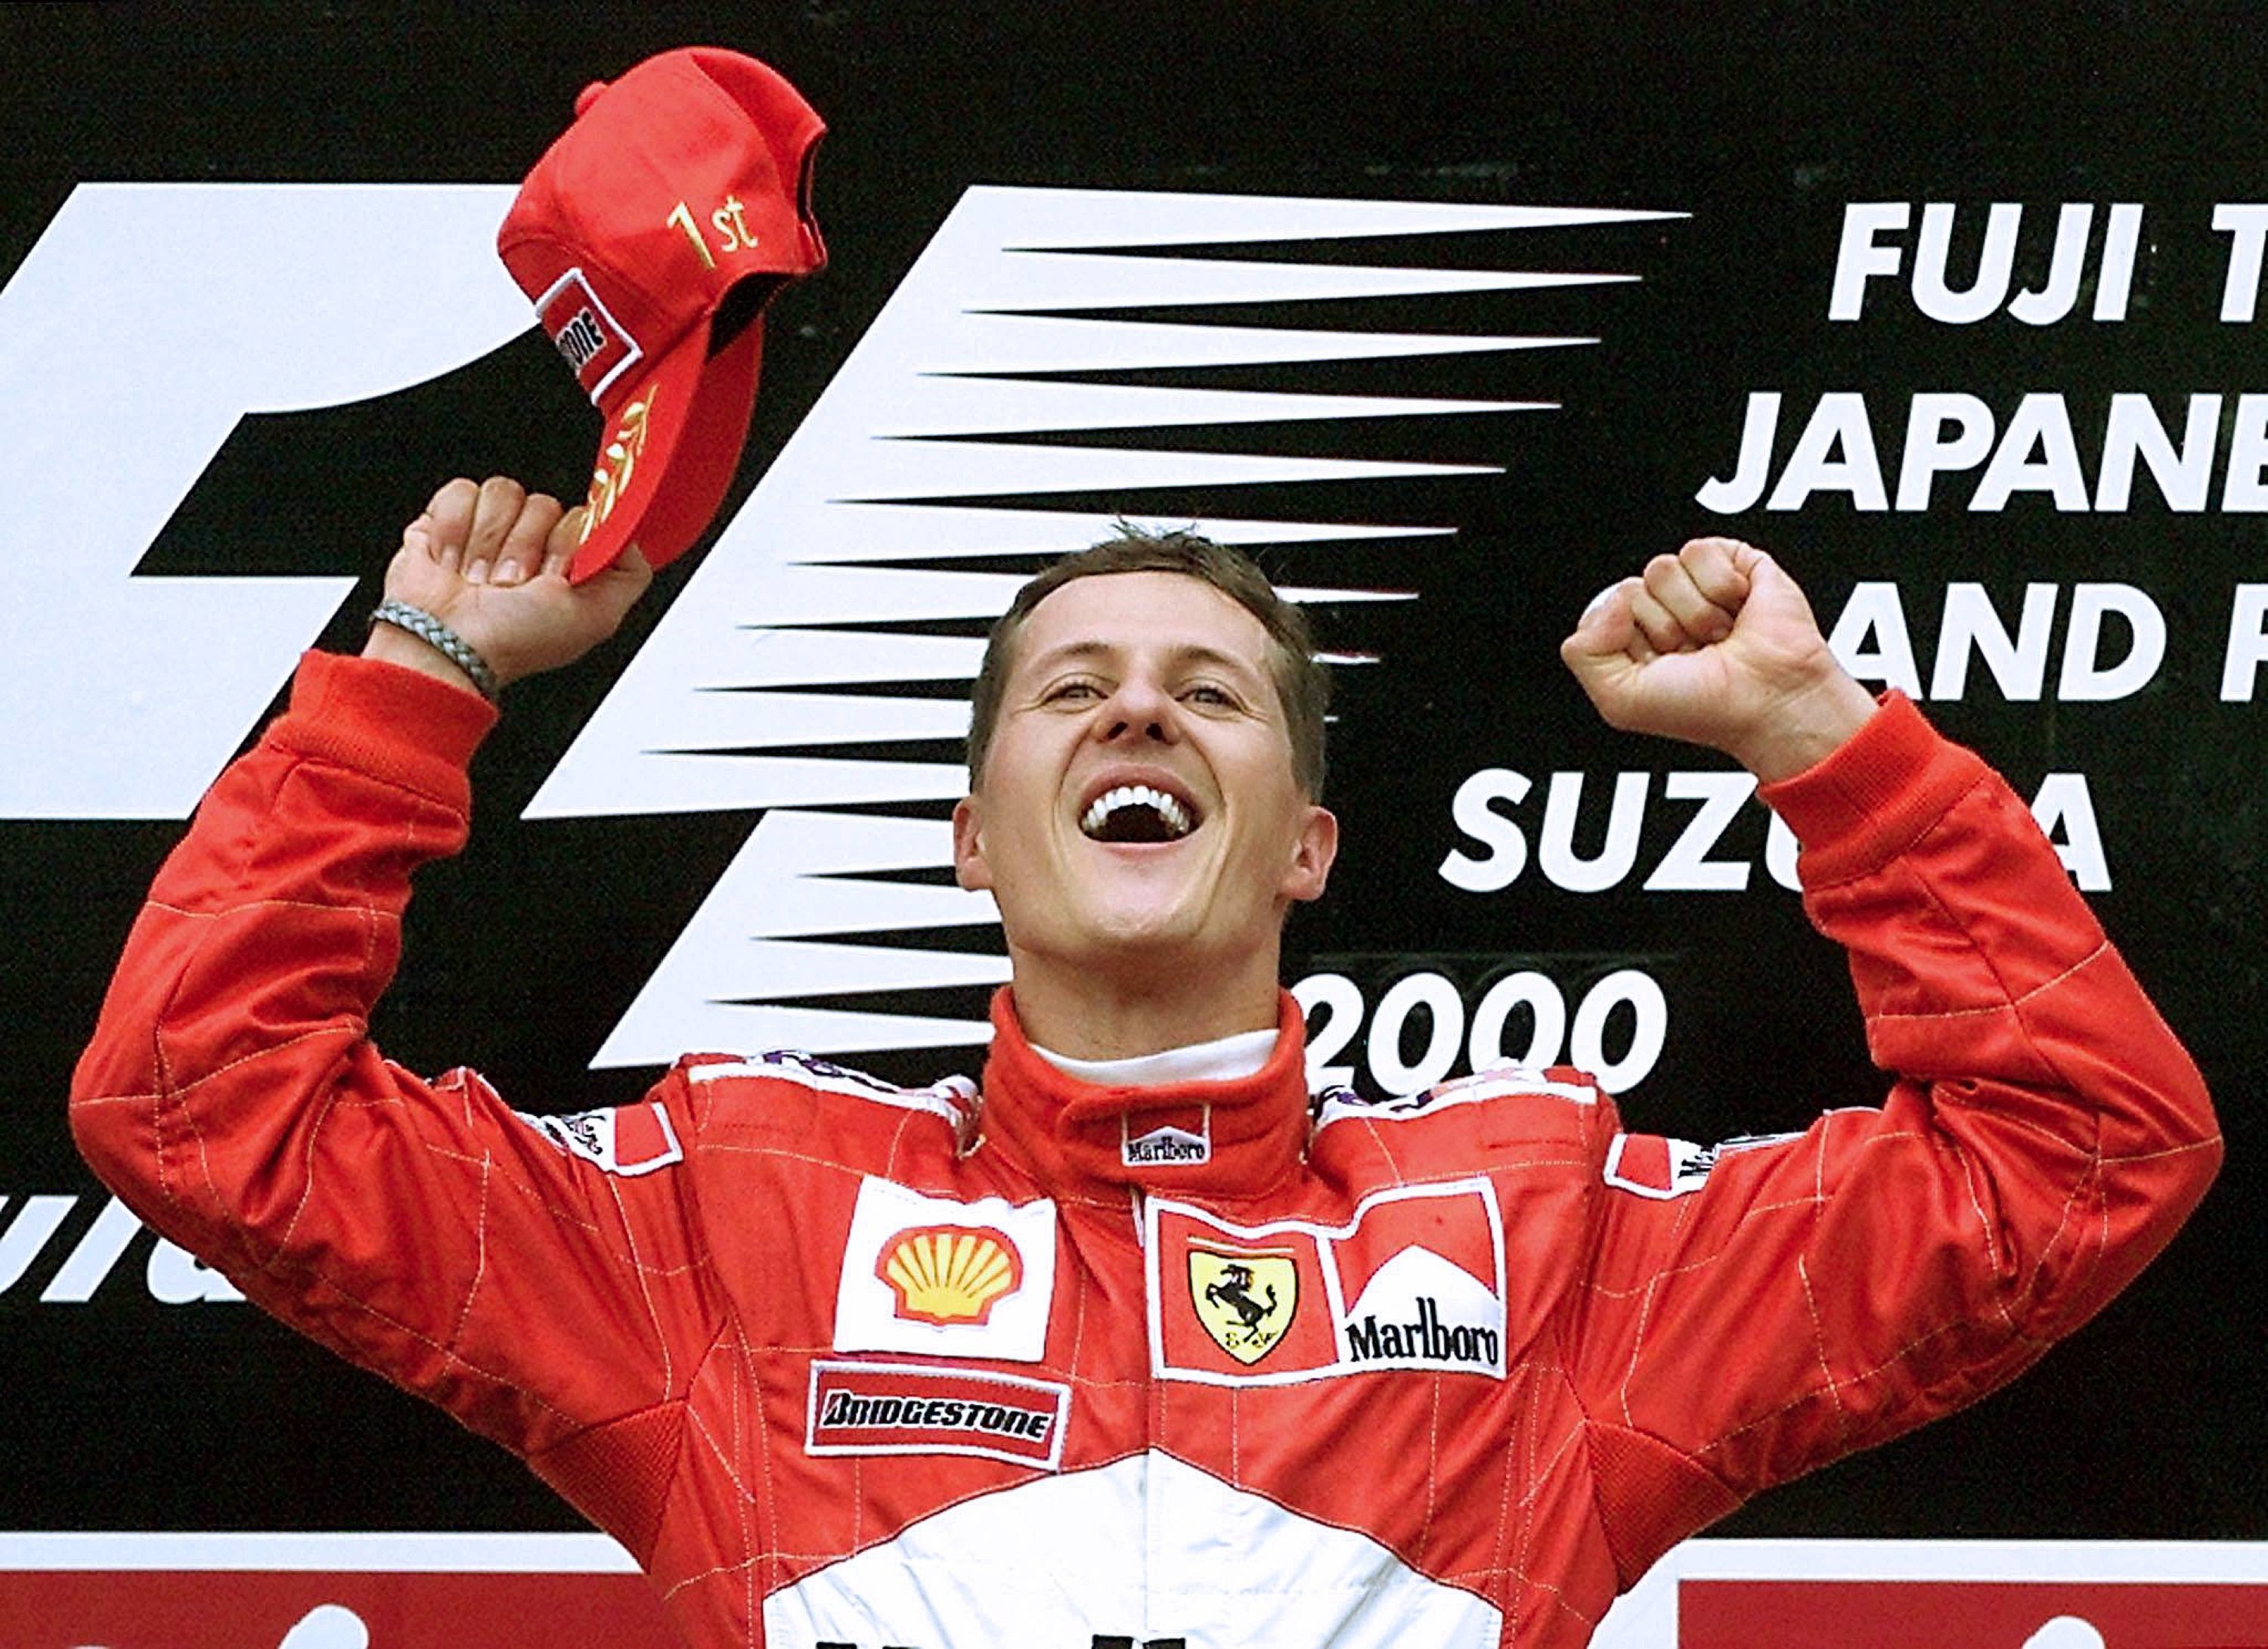 Michael Schumacher, demolidor, seqüeles irreversibles després de l'accident, no pot comunicar-se